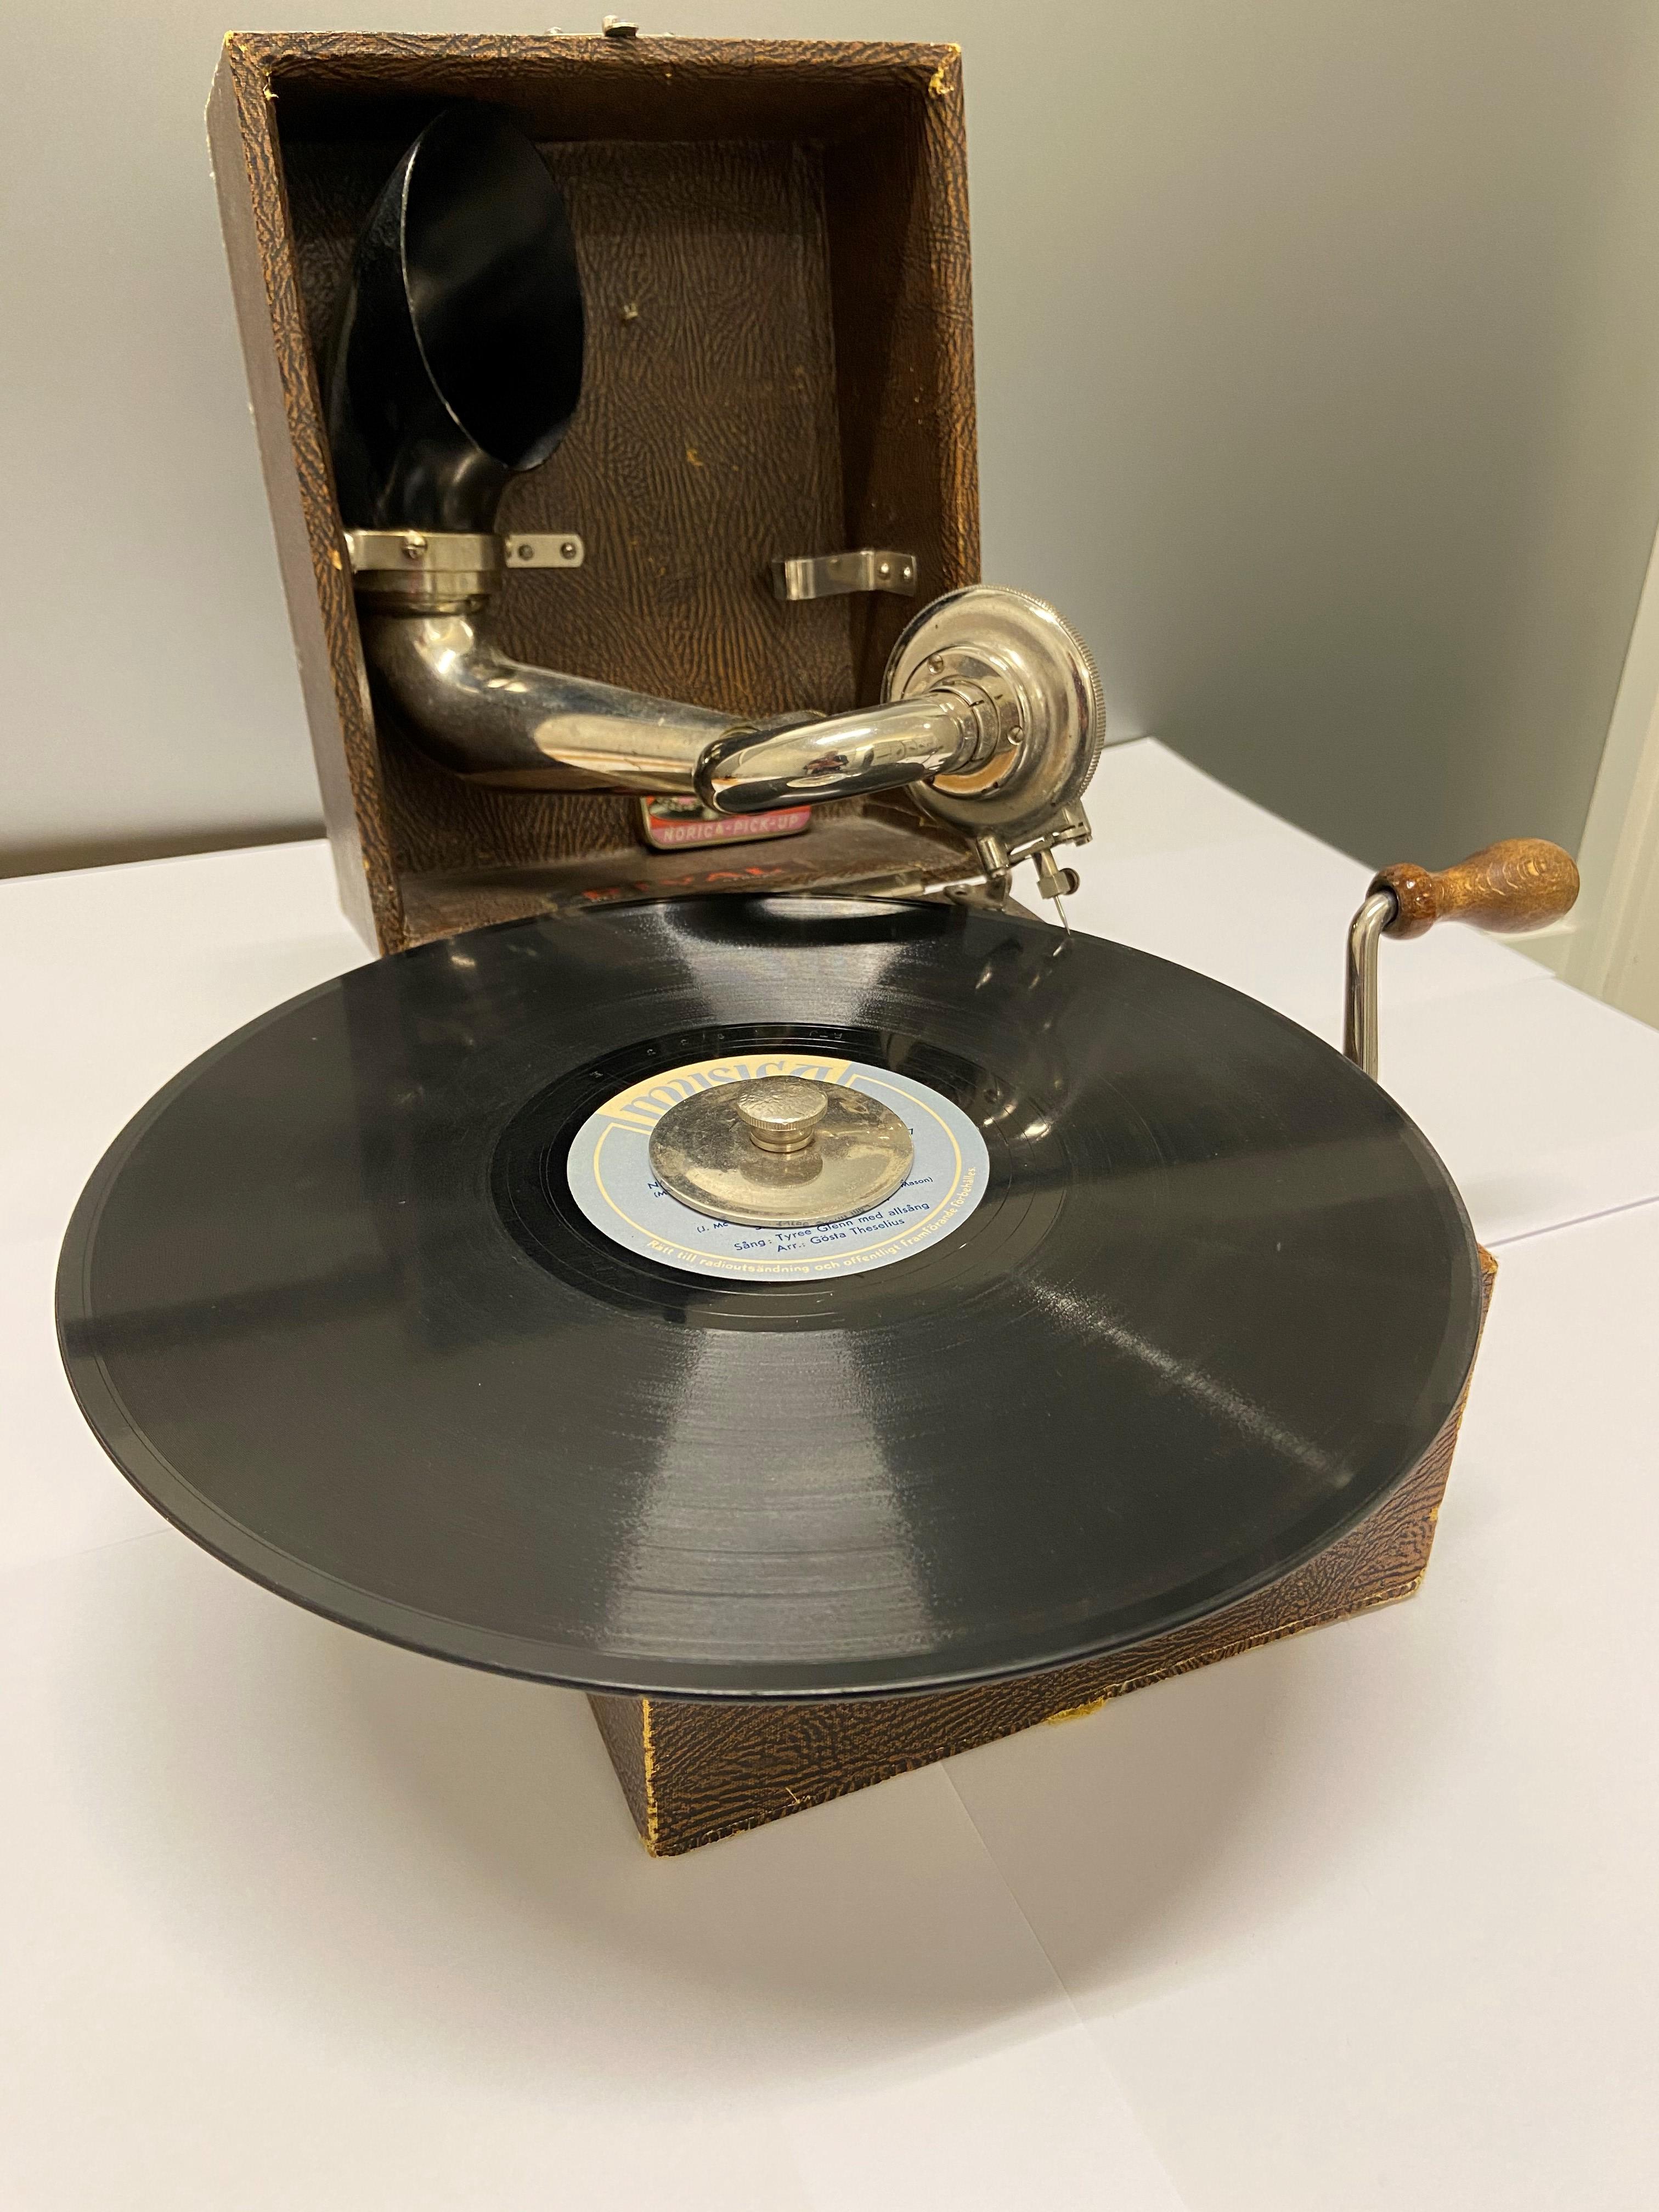 Grammofon i ljusbrun trälåda, med en skiva i centrum.